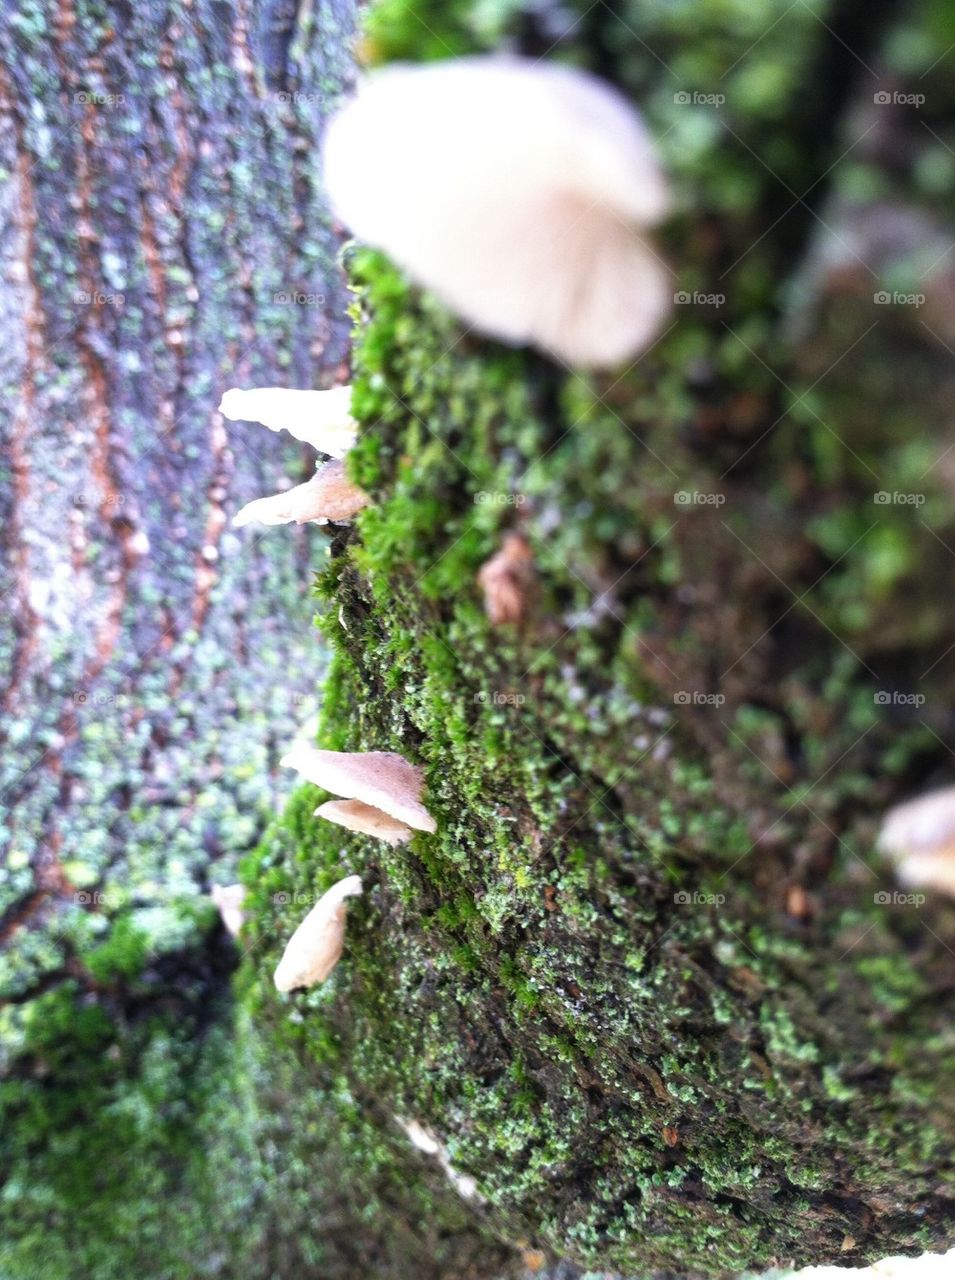 Mushroom moss covered tree